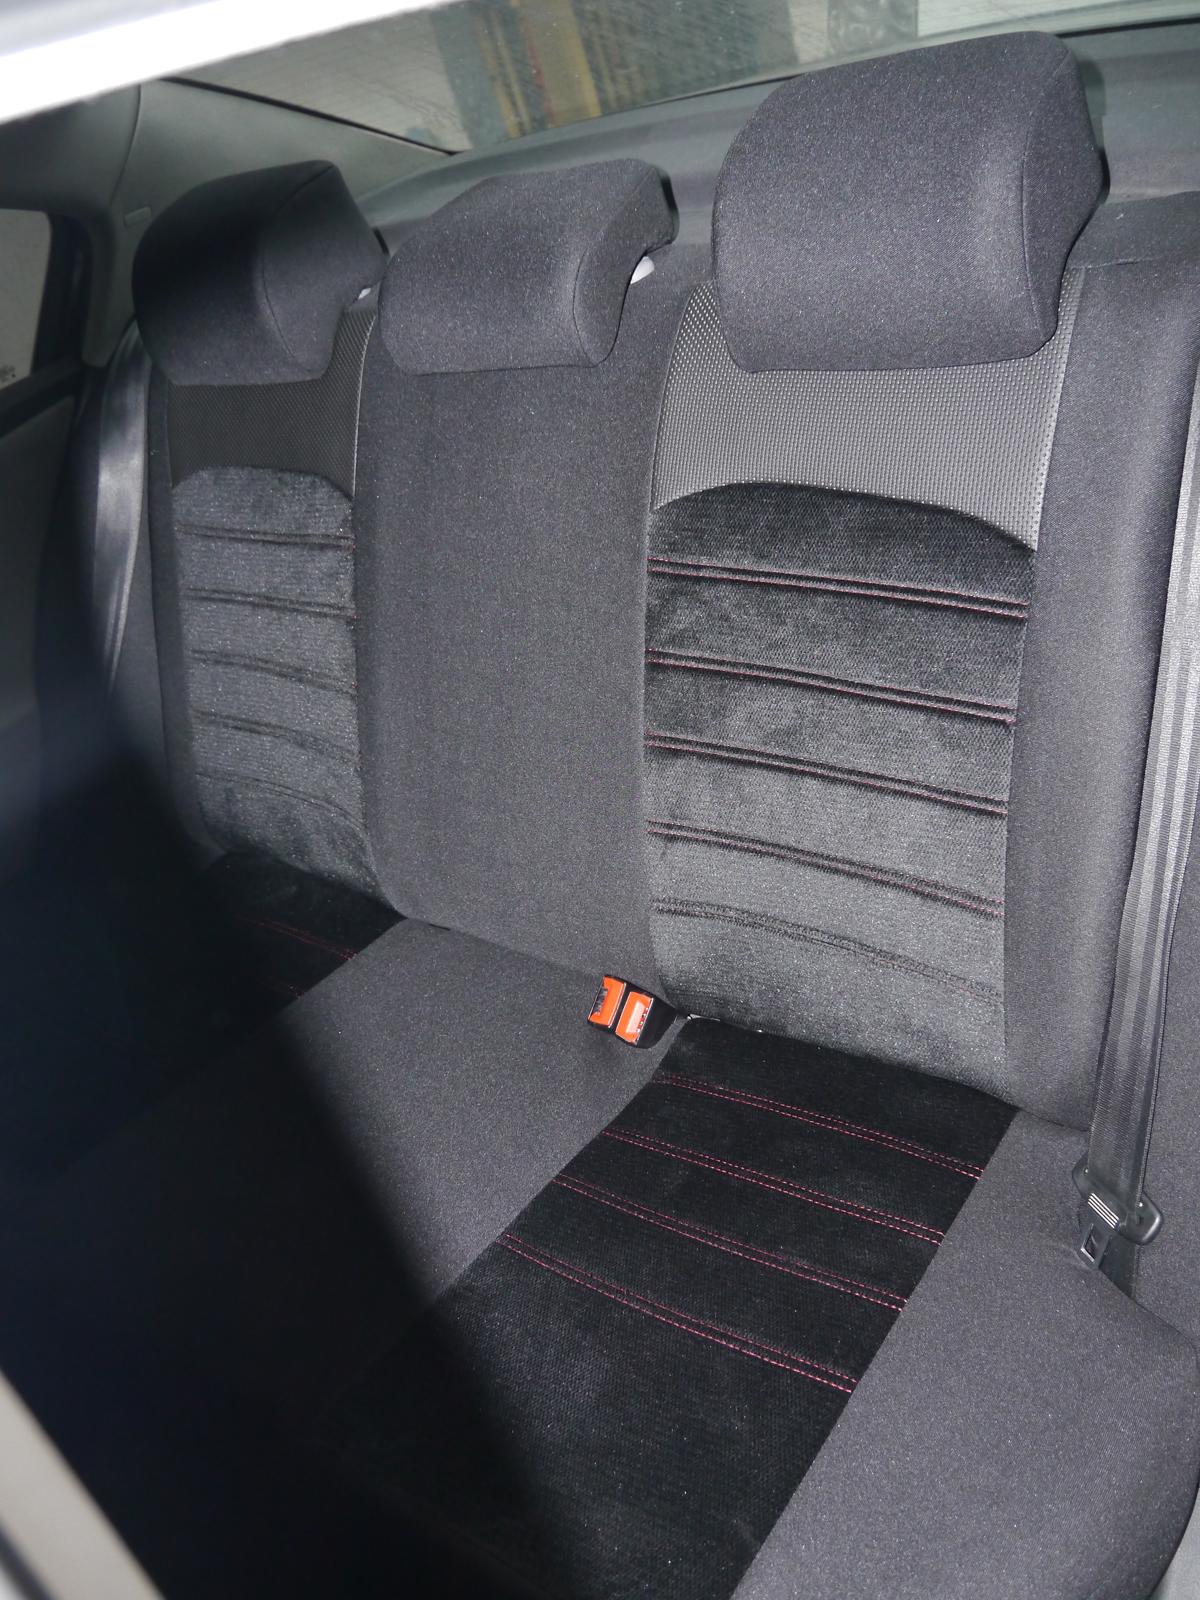 Profi Auto PKW Schonbezug Sitzbezug Sitzbezüge für VW Golf 6 Autostyling  504266/vw_golf_06/L